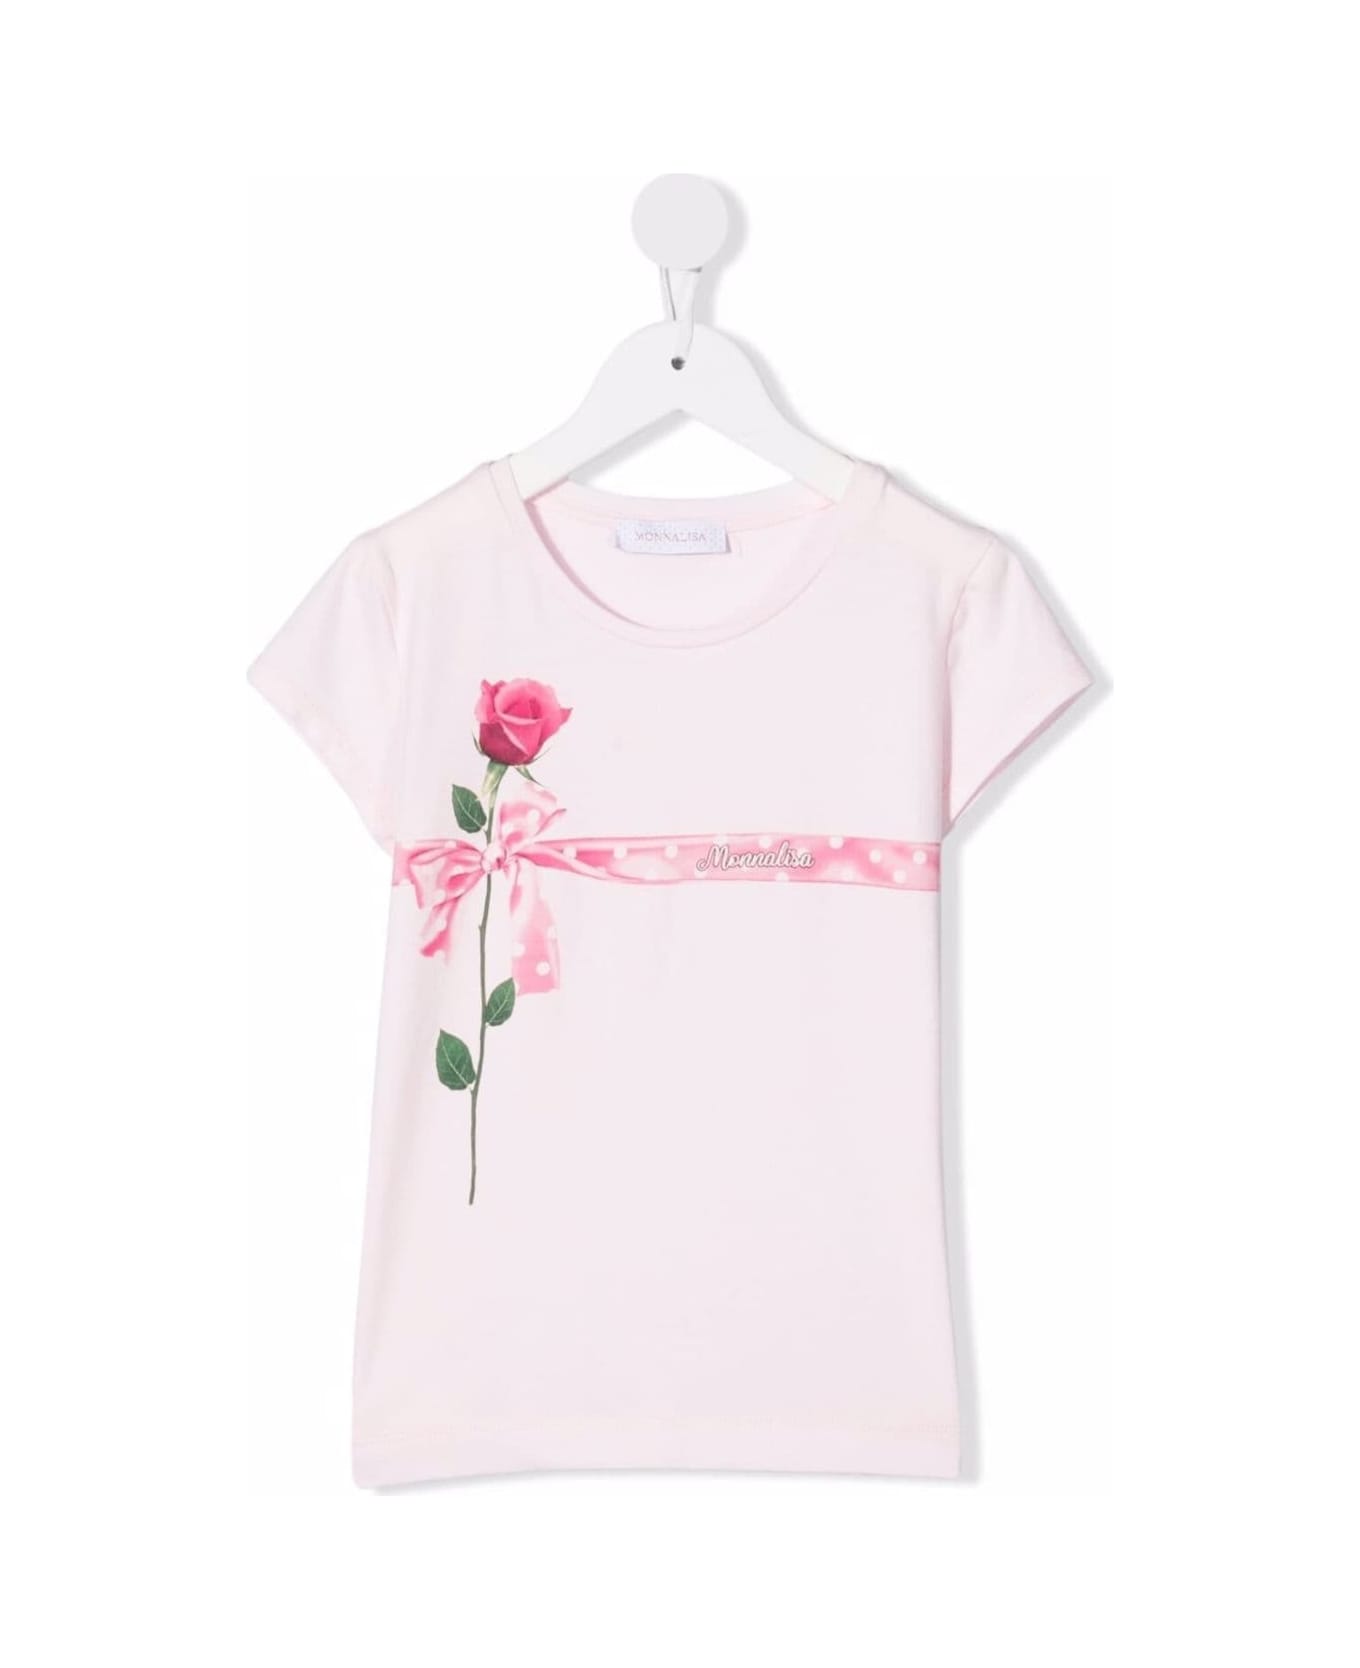 Monnalisa Pink Cotton T-shirt With Rose Print - Pink